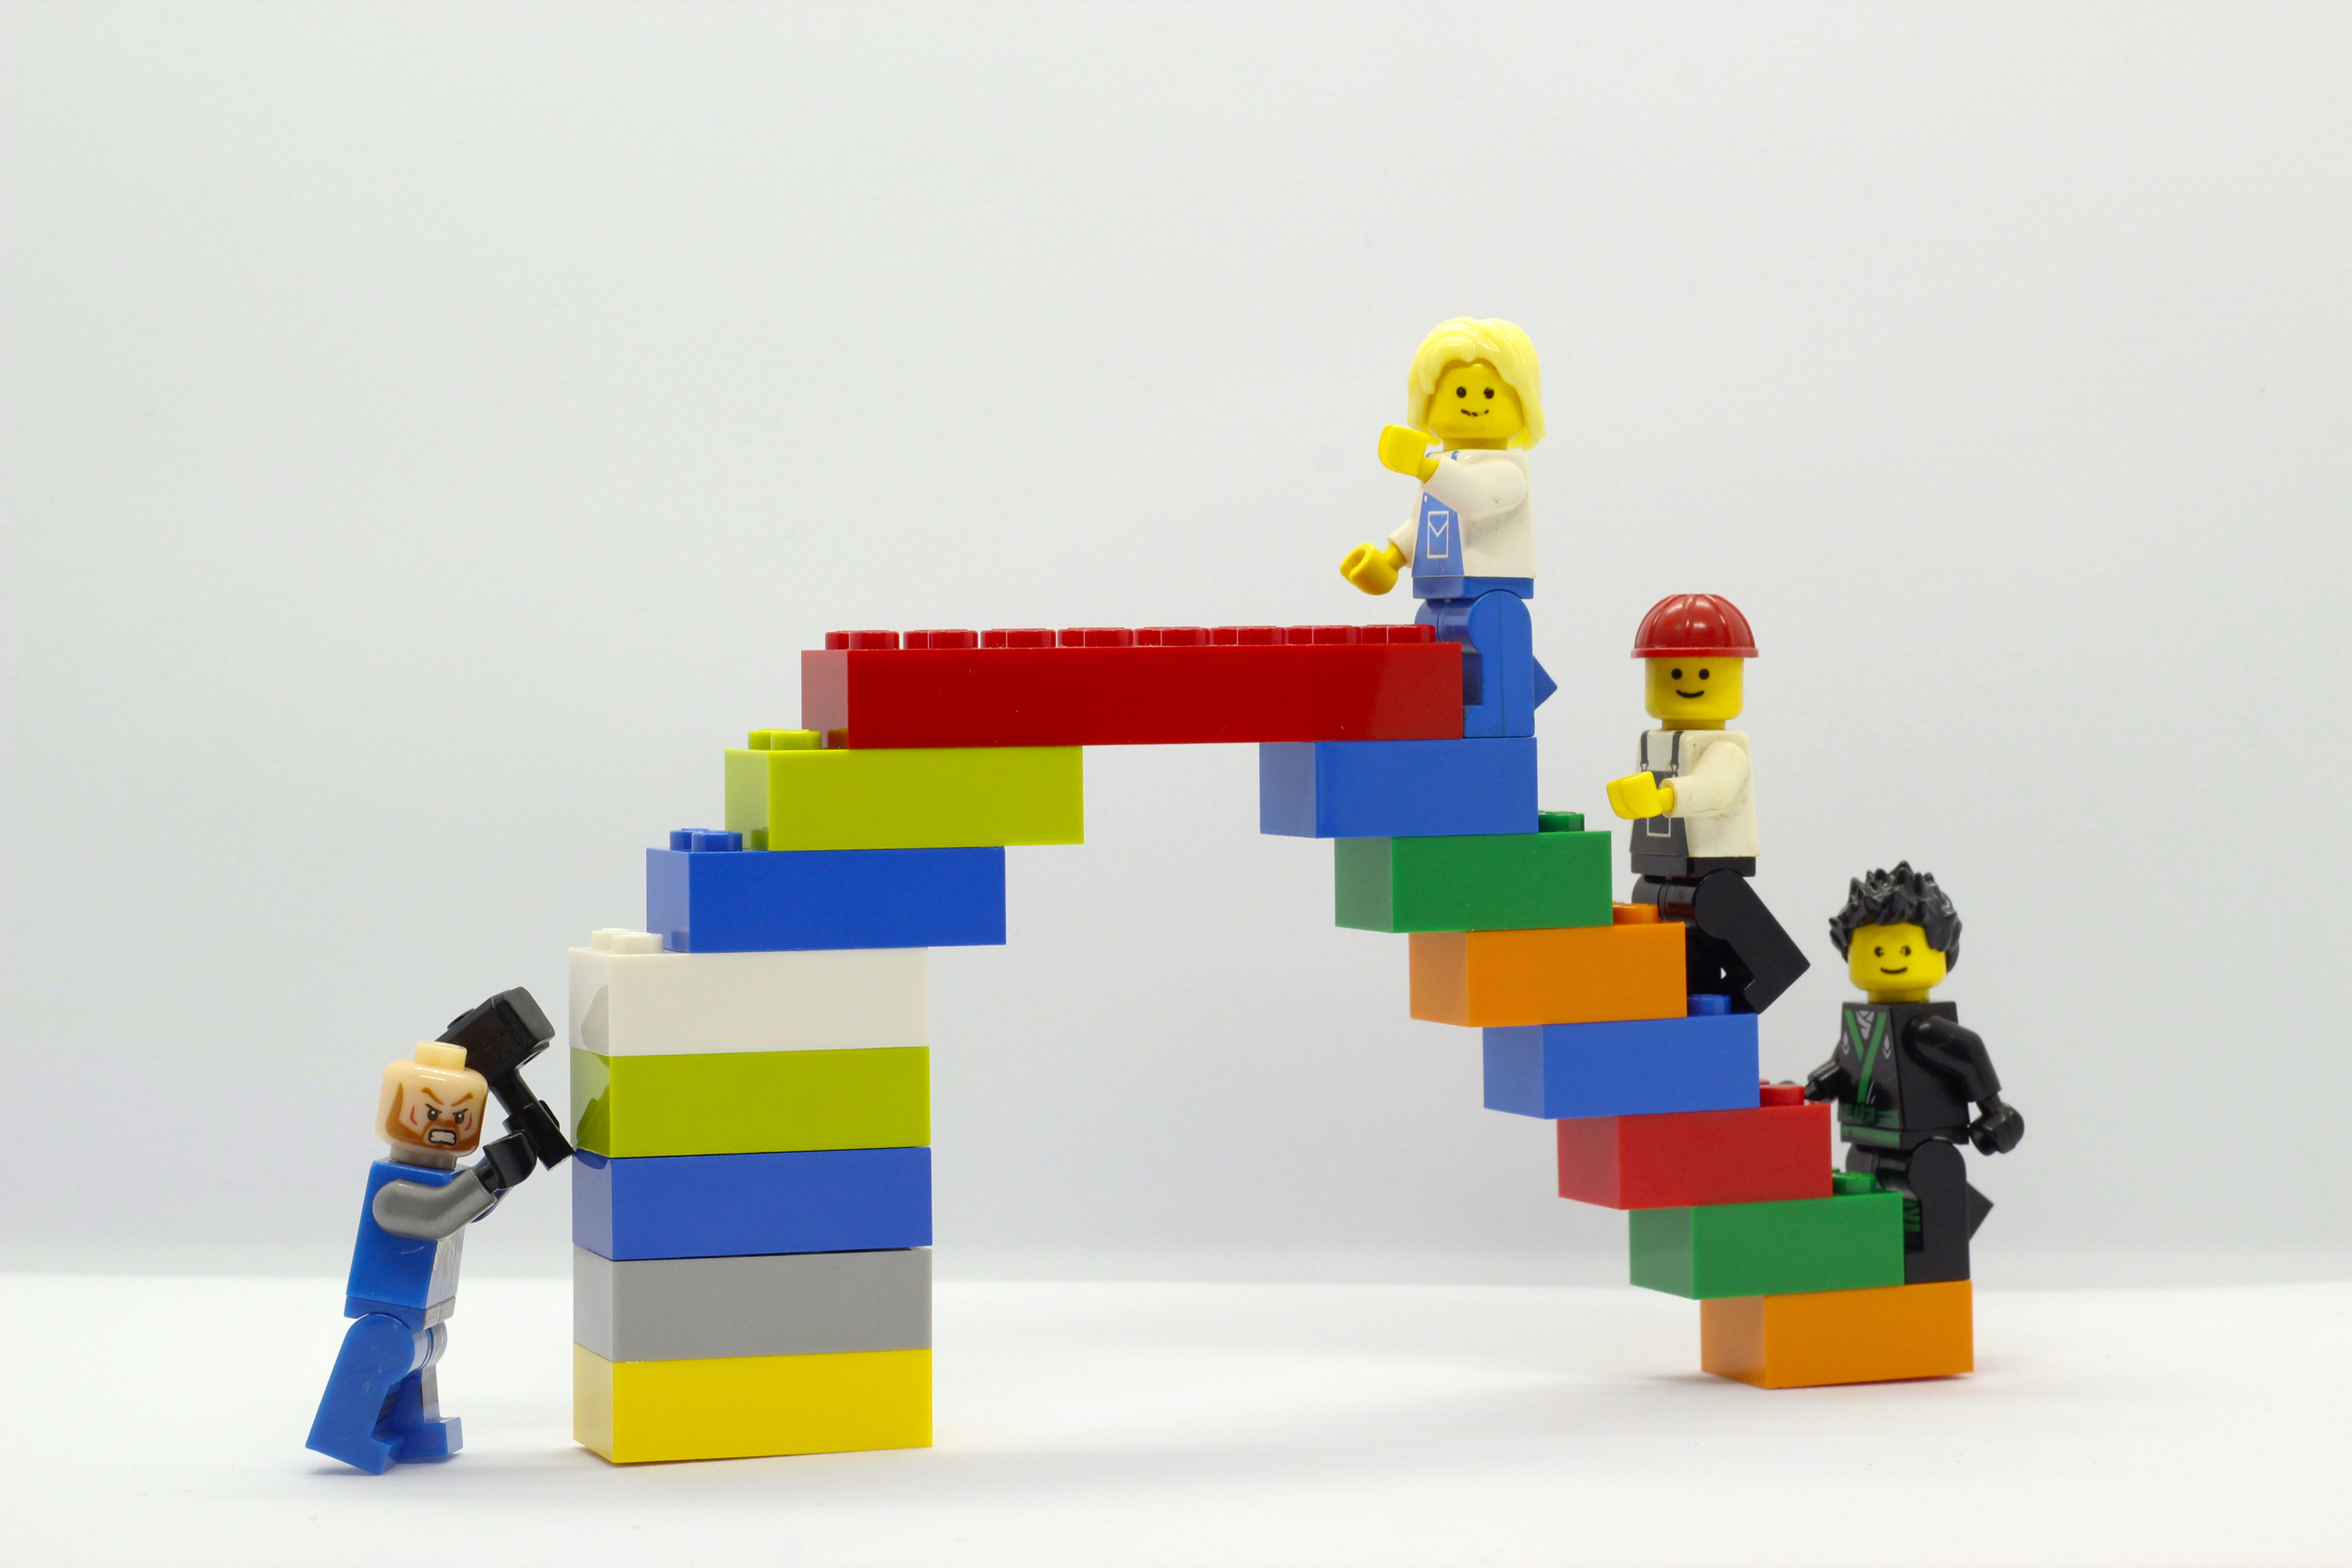 Компания Lego предложила отправлять им ненужные детали, которые потом пожертвуют нуждающимся детям